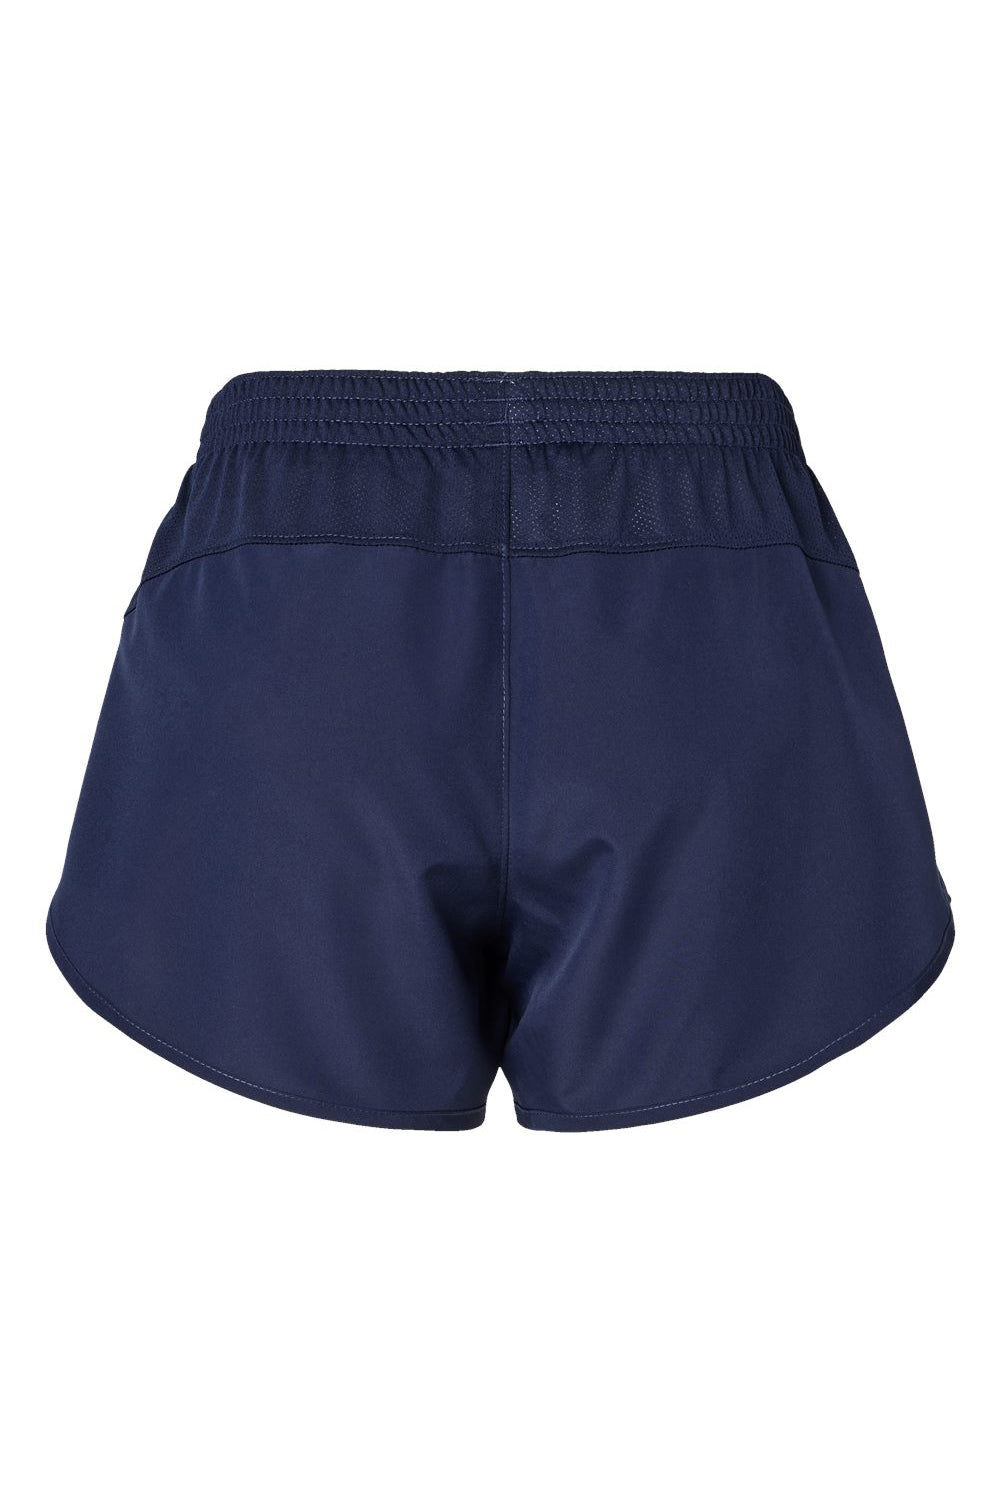 Augusta Sportswear 2430 Womens Wayfarer Moisture Wicking Shorts Navy Blue Flat Back